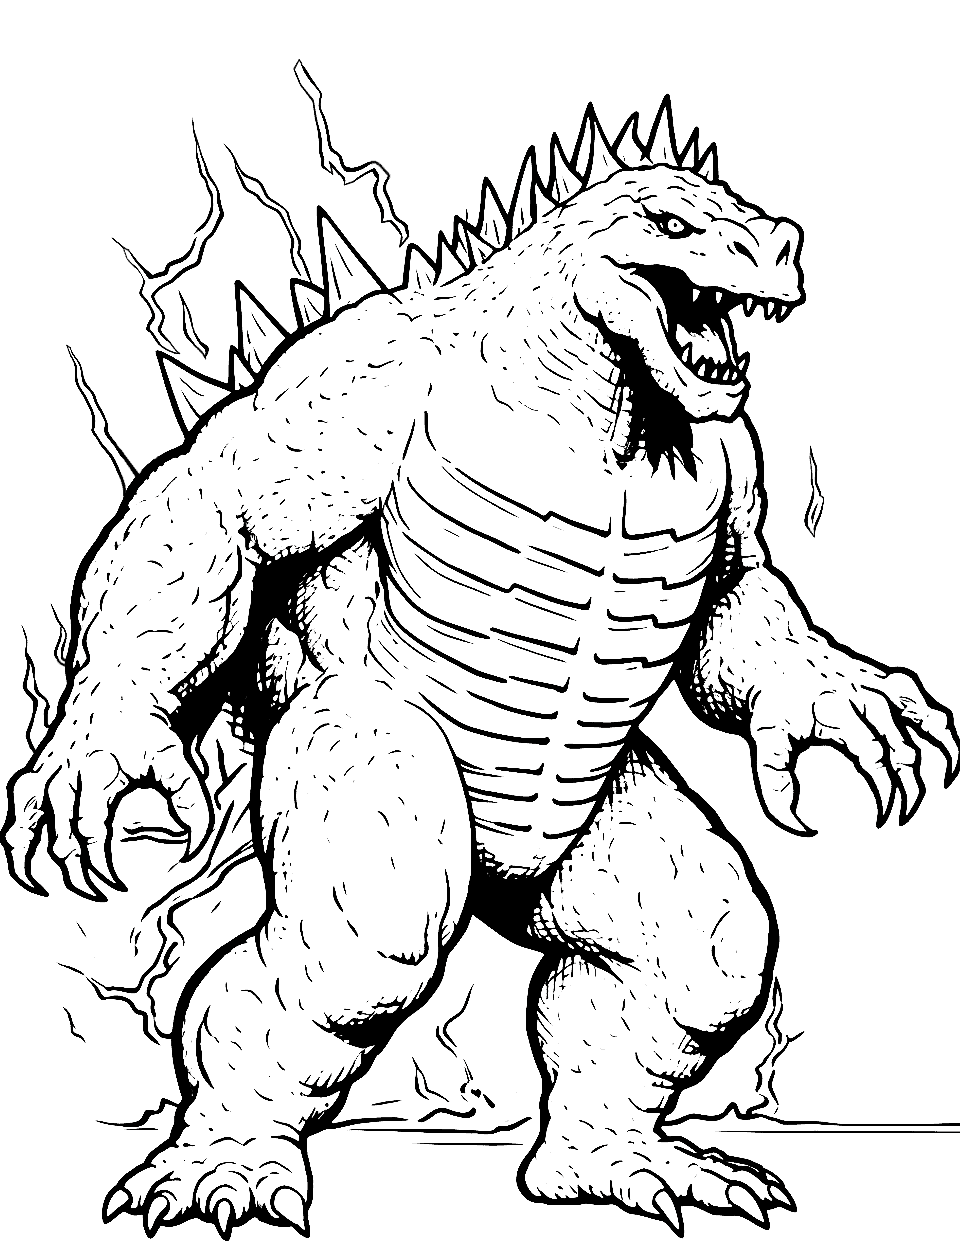 Godzilla coloring pages free printable sheets